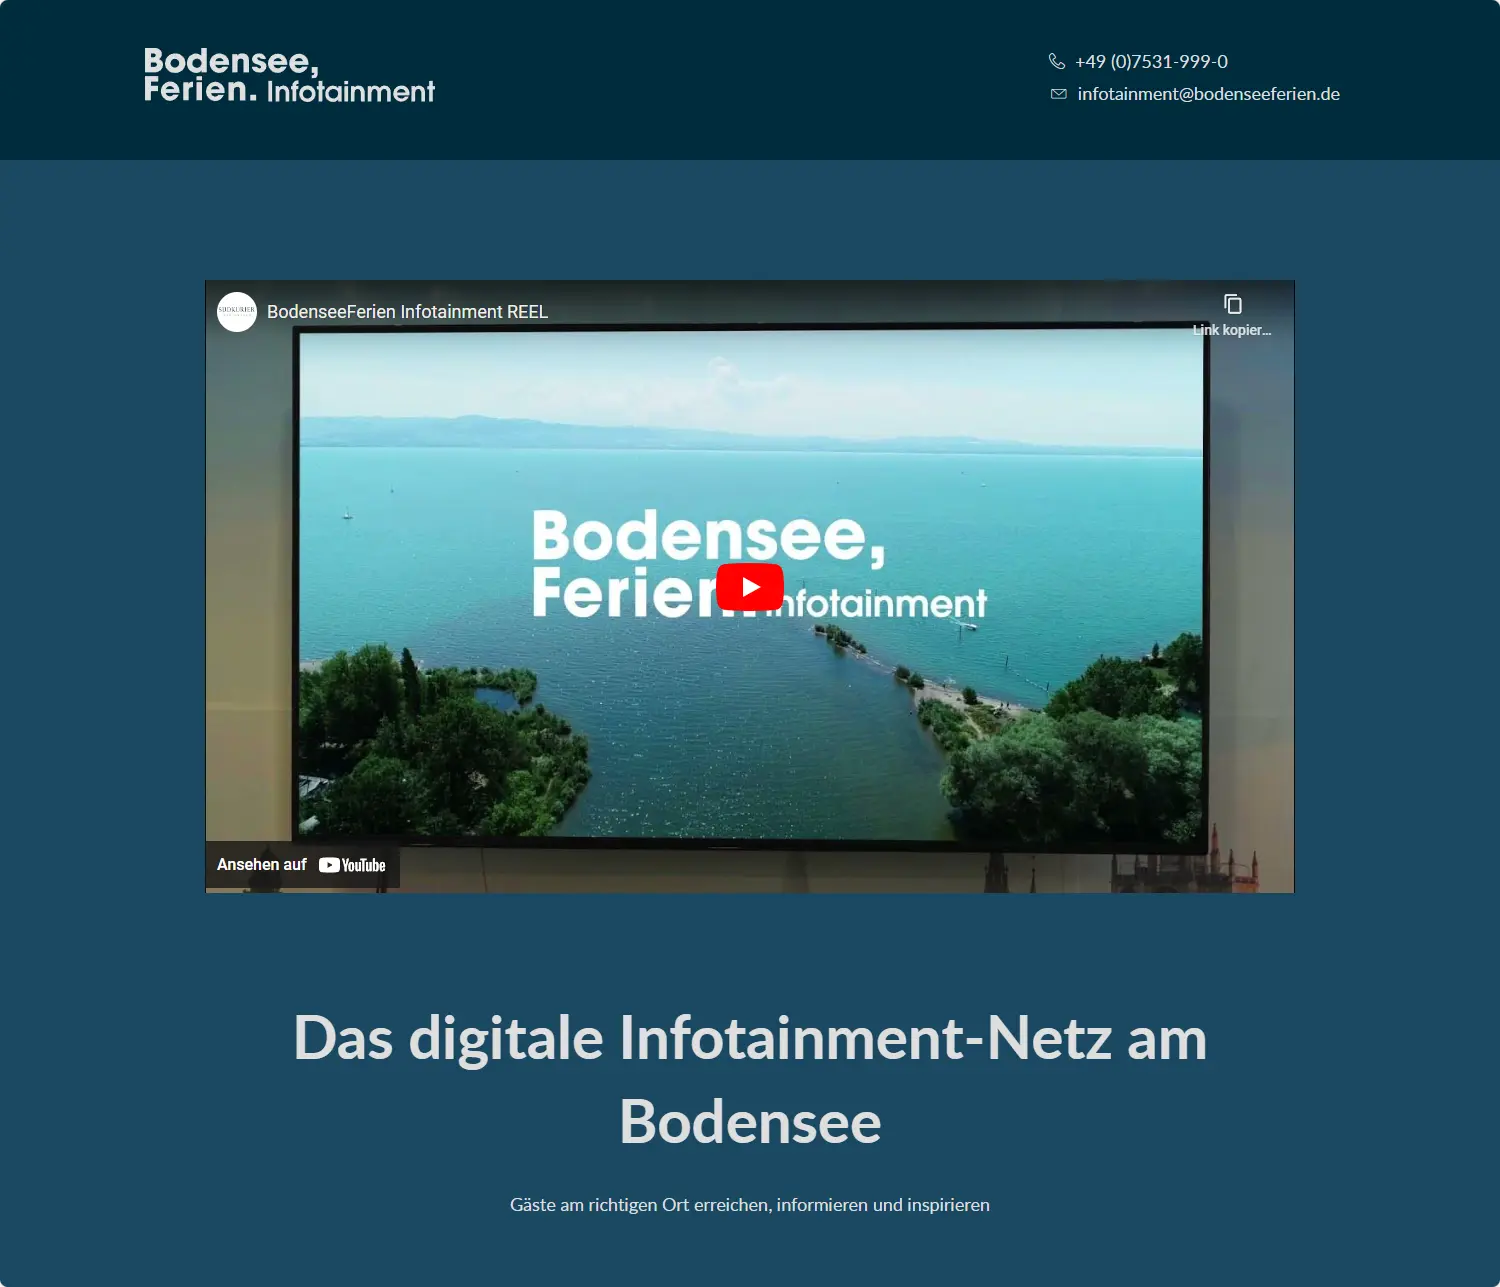 Bodensee, Ferien. Infotainment